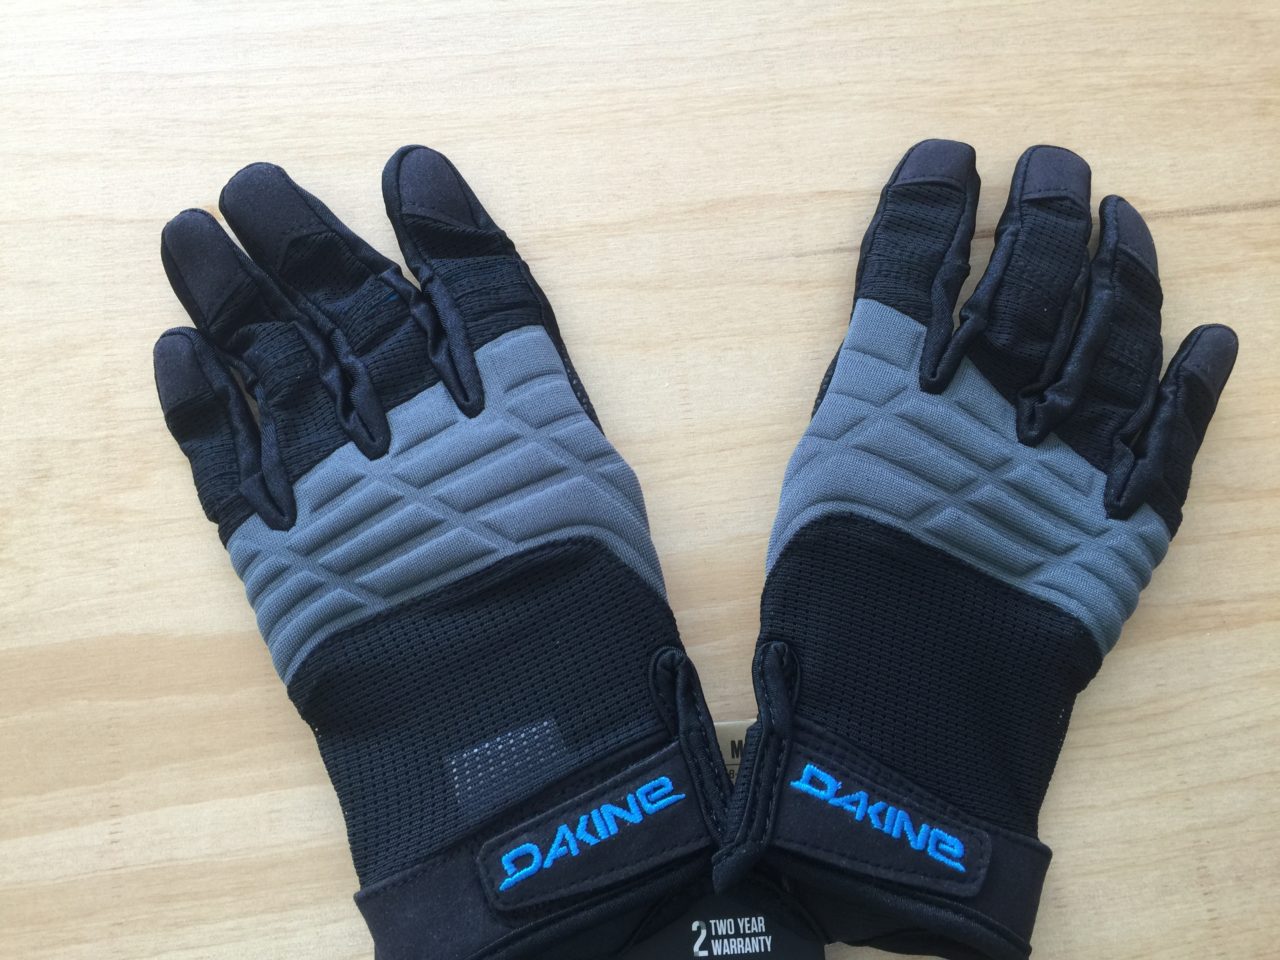 Dakine Full Finger Sailing Gloves